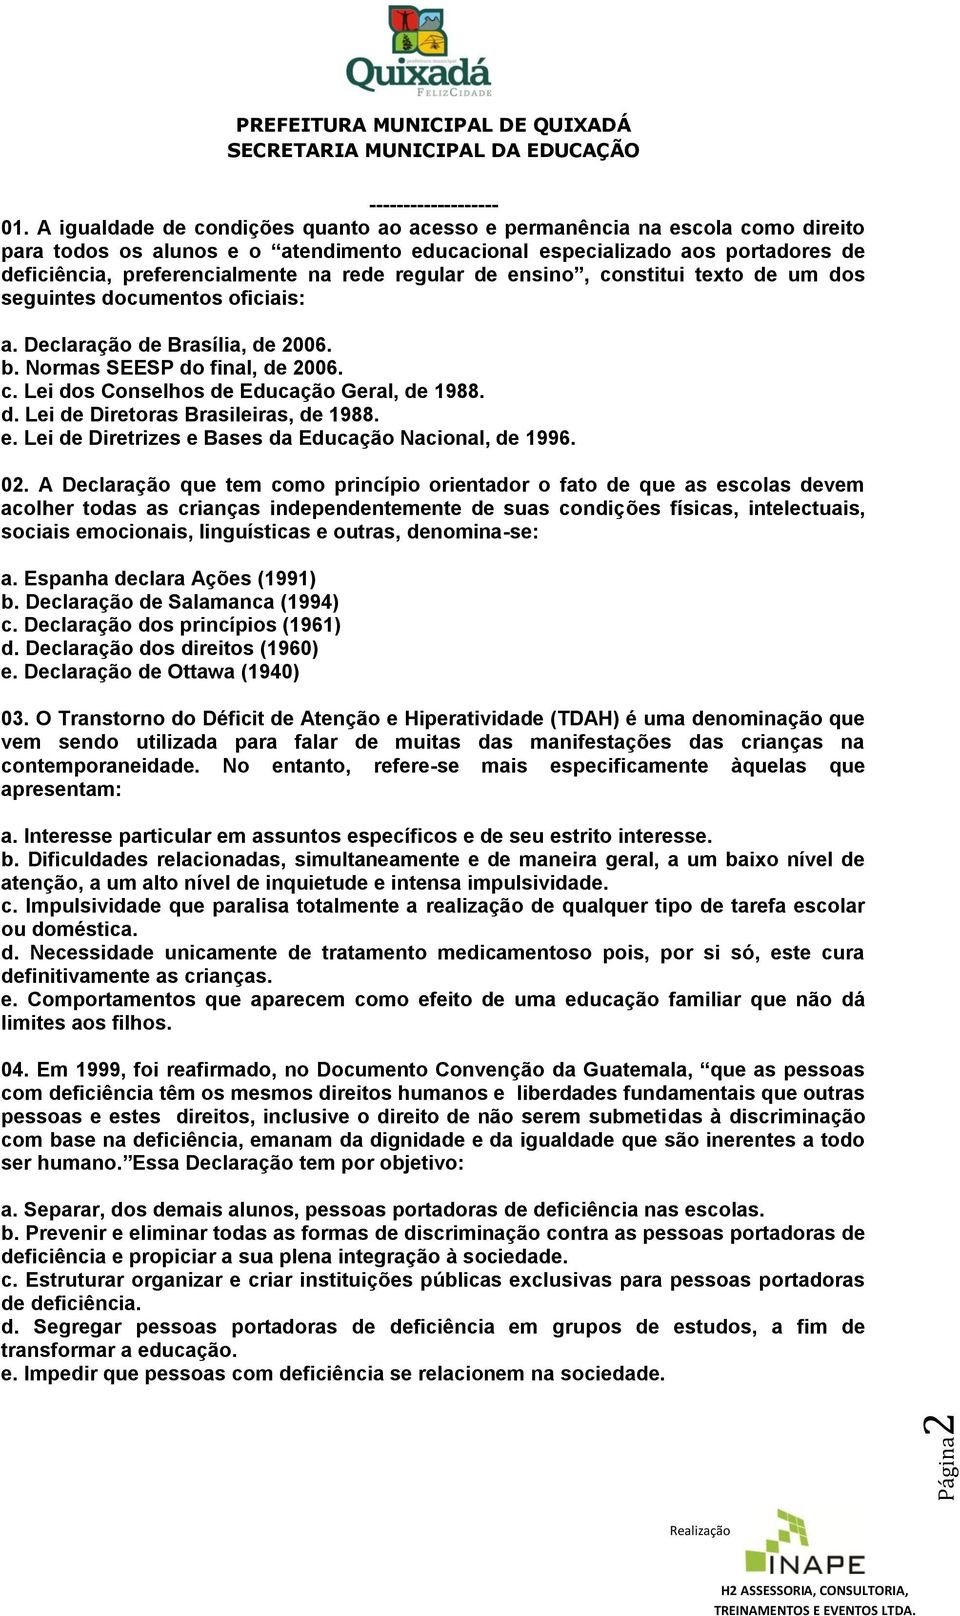 regular de ensino, constitui texto de um dos seguintes documentos oficiais a. Declaração de Brasília, de 2006. b. Normas SEESP do final, de 2006. c. Lei dos Conselhos de Educação Geral, de 1988. d. Lei de Diretoras Brasileiras, de 1988.